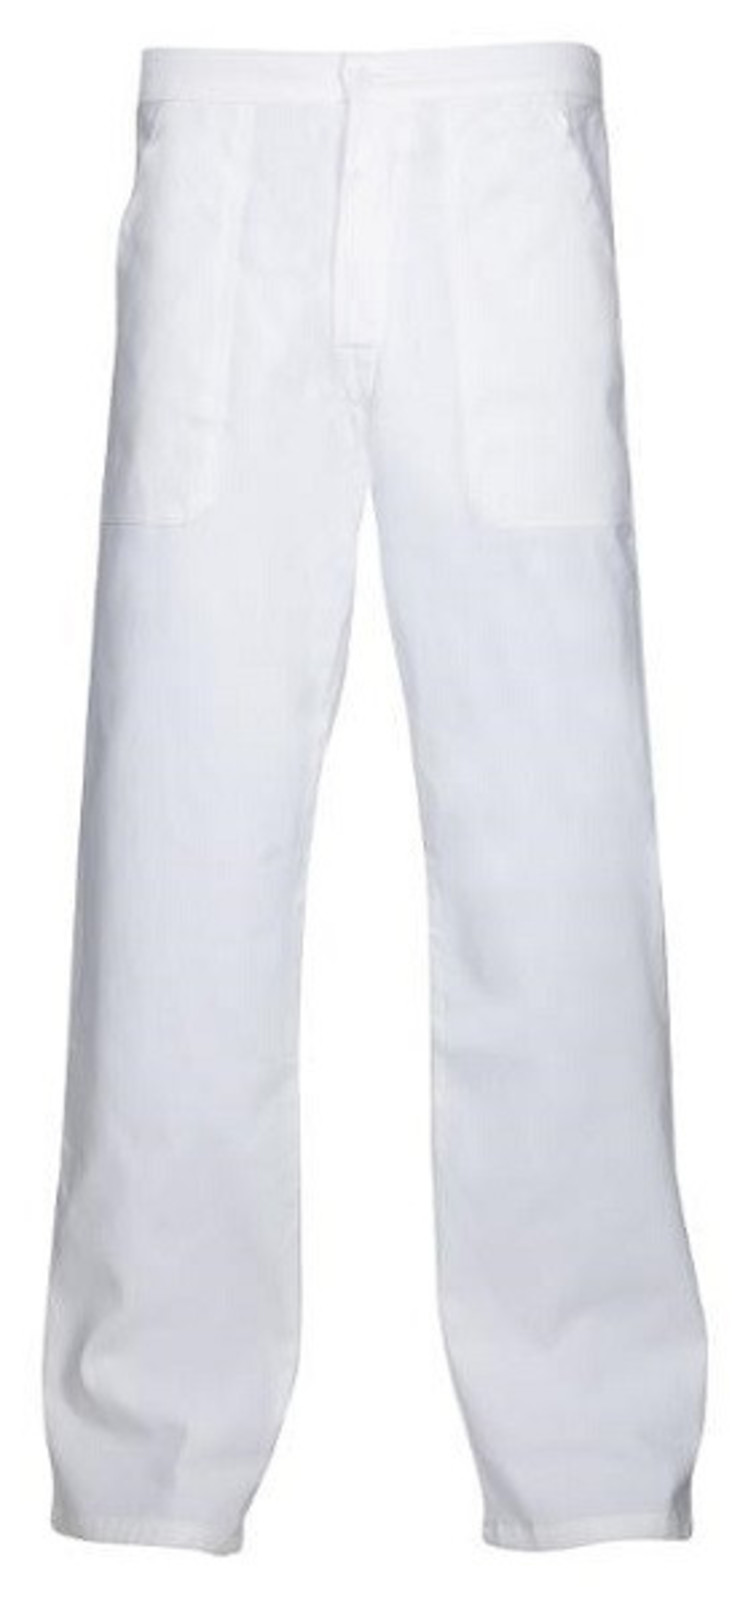 Pánske biele nohavice Ardon Sander - veľkosť: 58, farba: biela